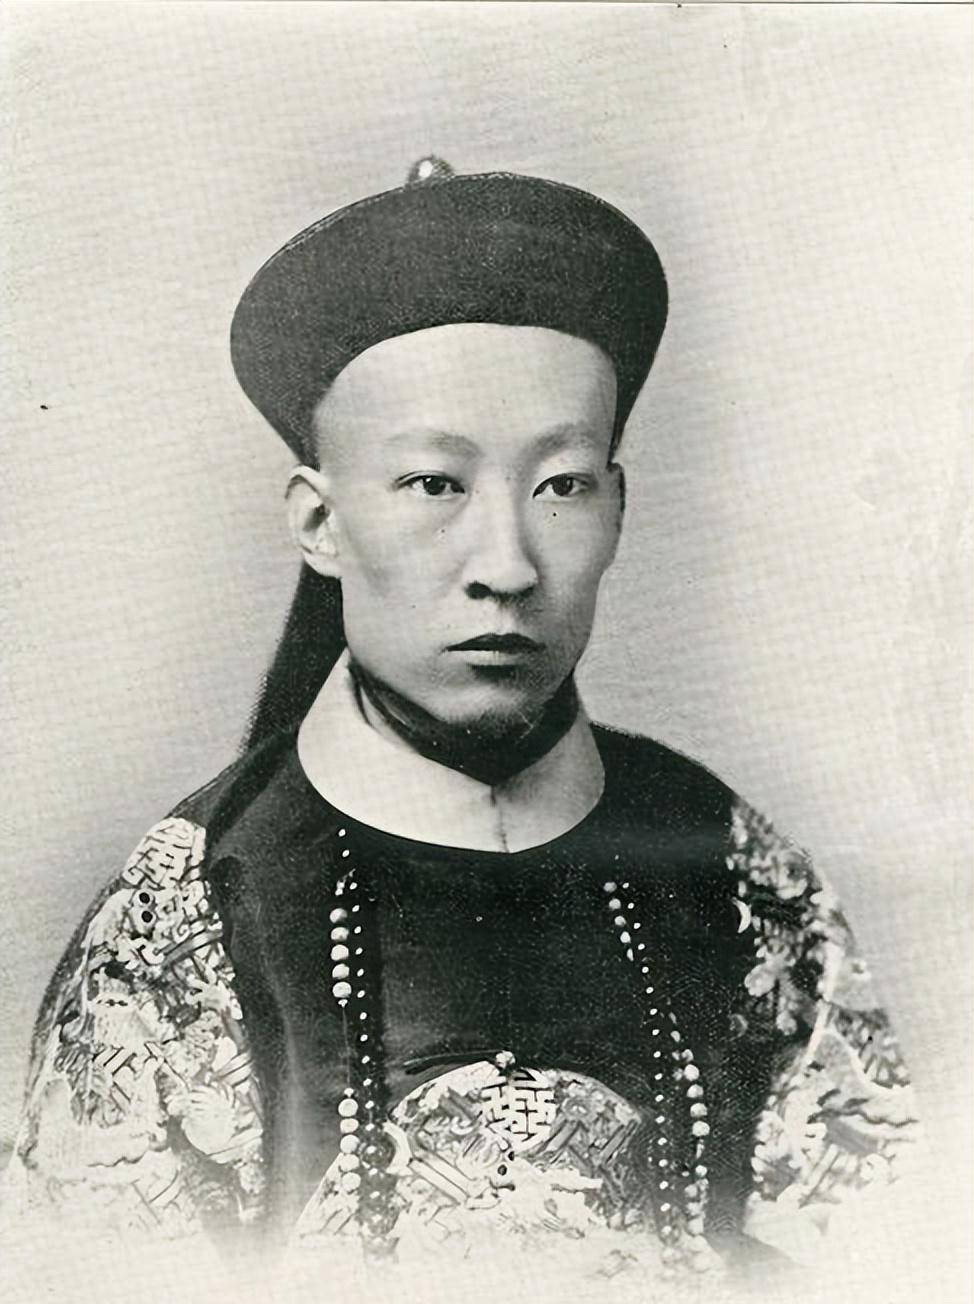 之所以说爱新觉罗·文葵是清朝最后一个铁帽子王,是因为他是末代